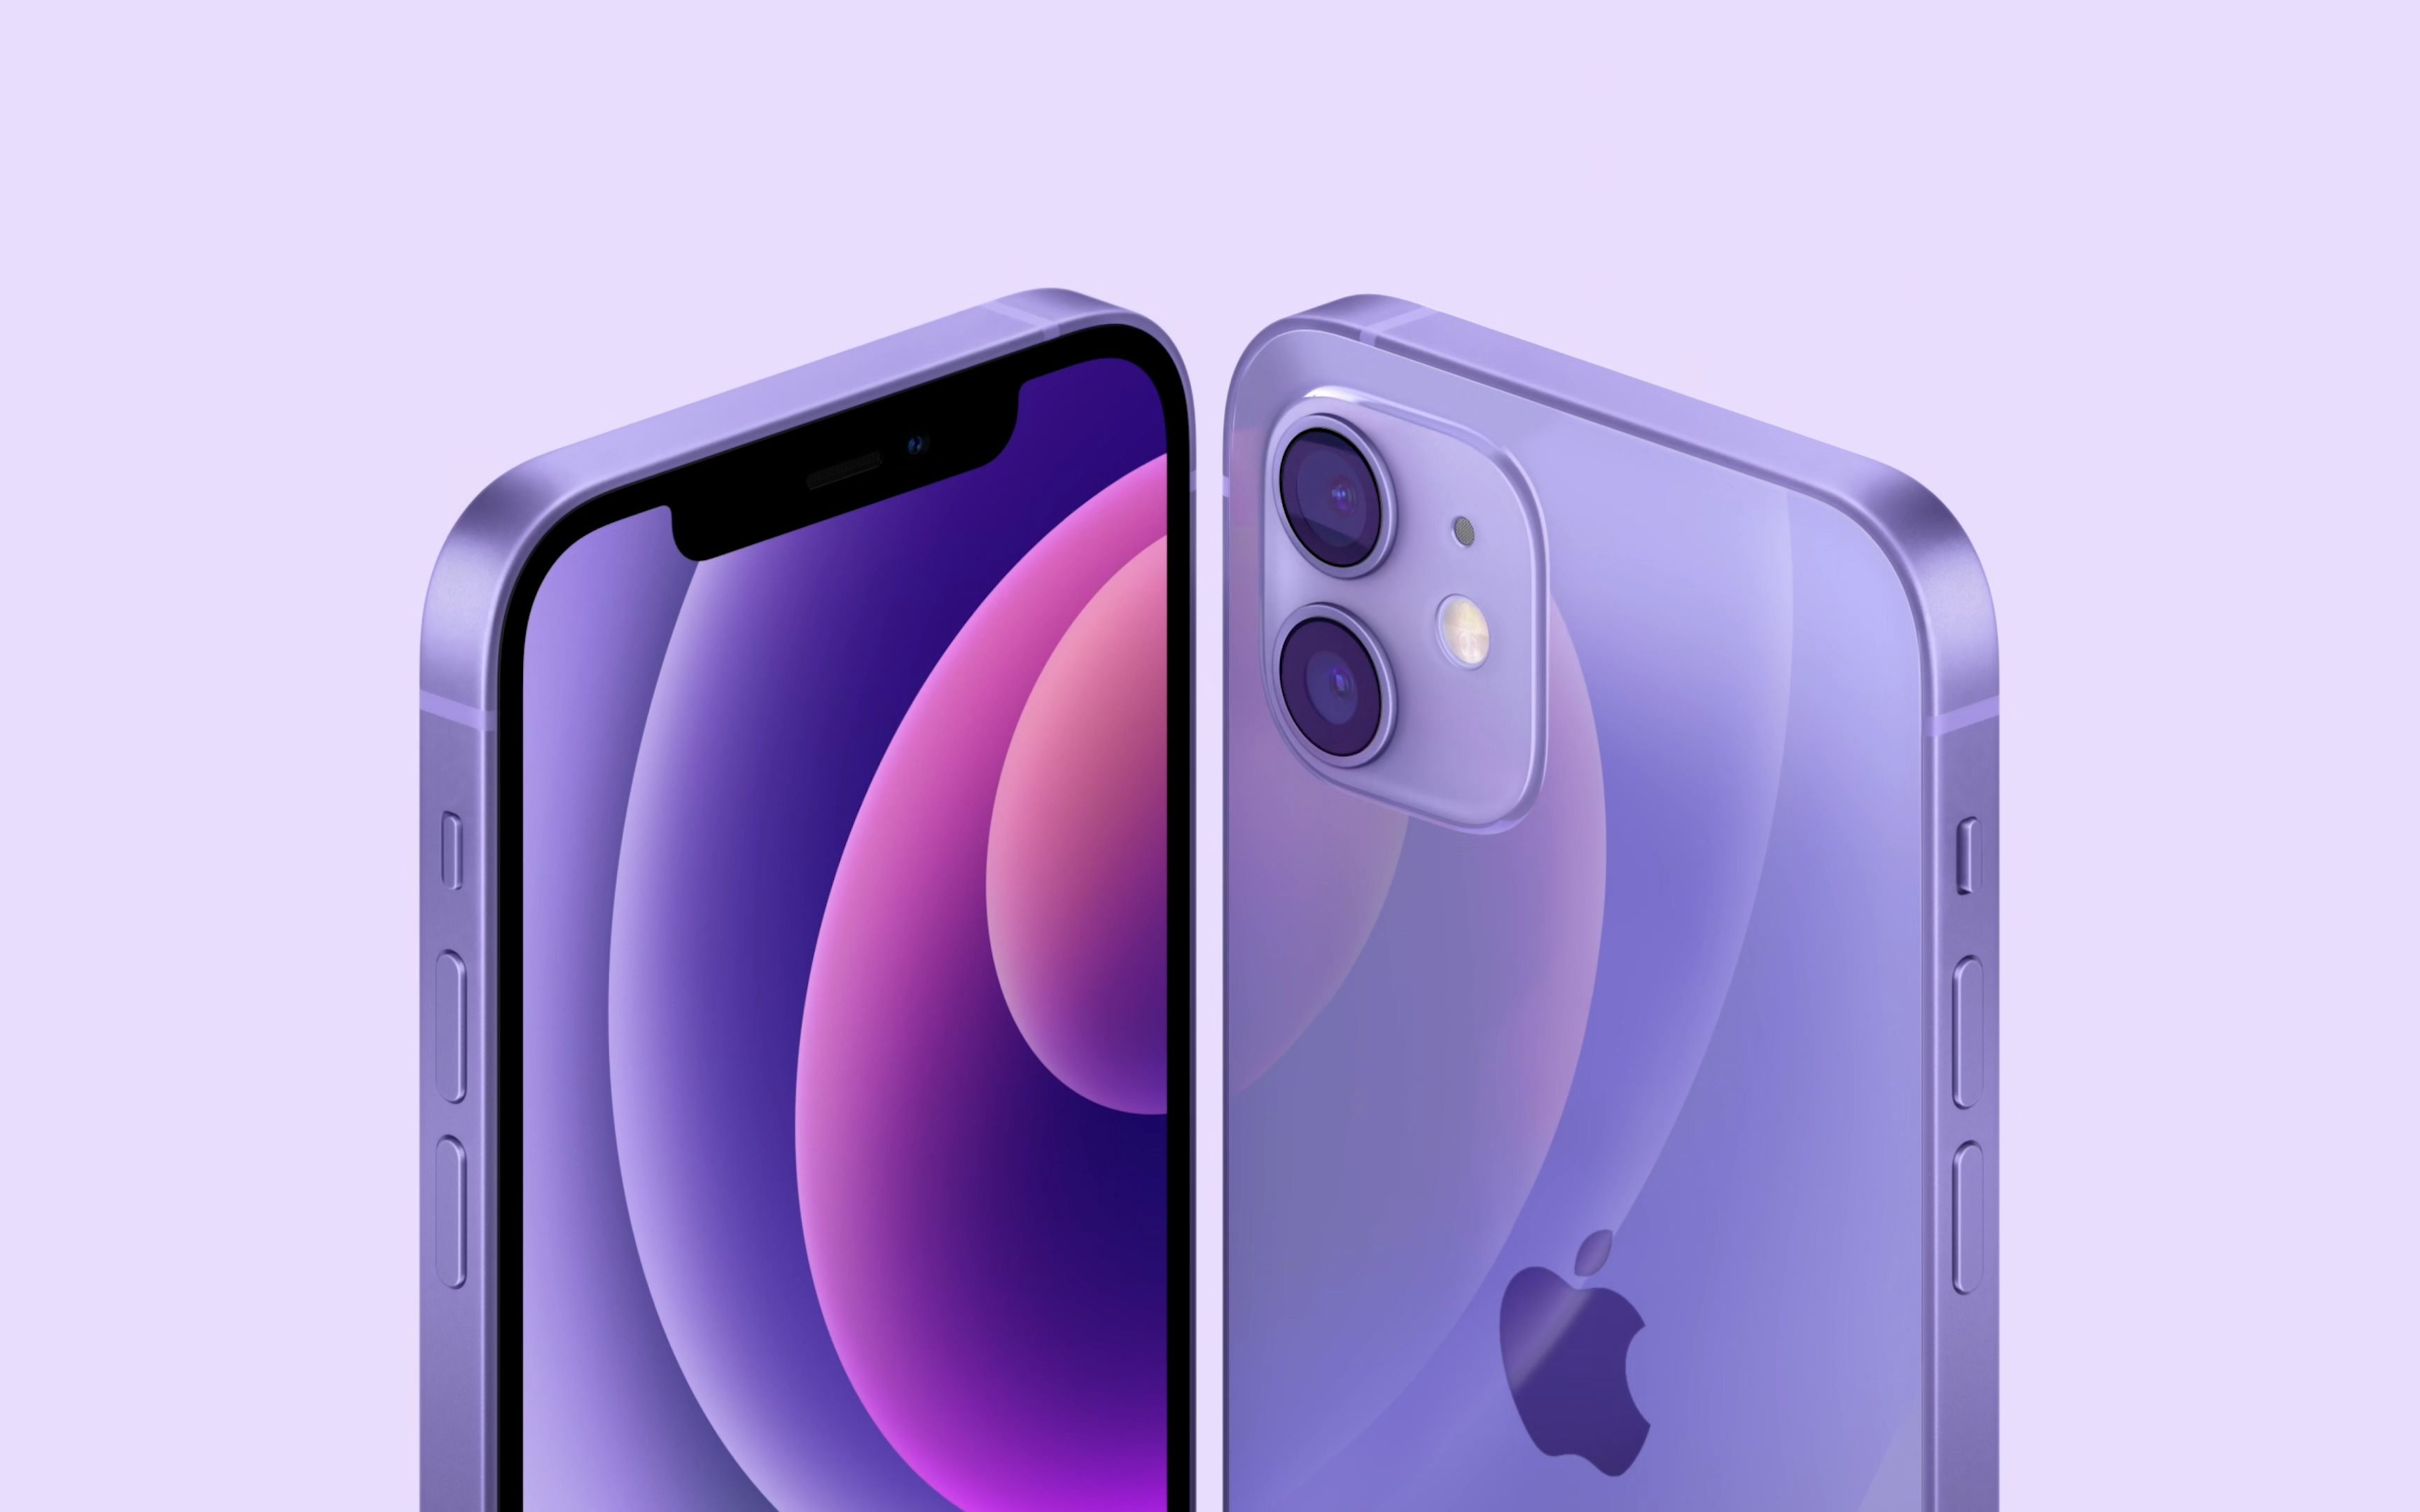 4k全新配色苹果iphone12紫色广告视频宣传片2021